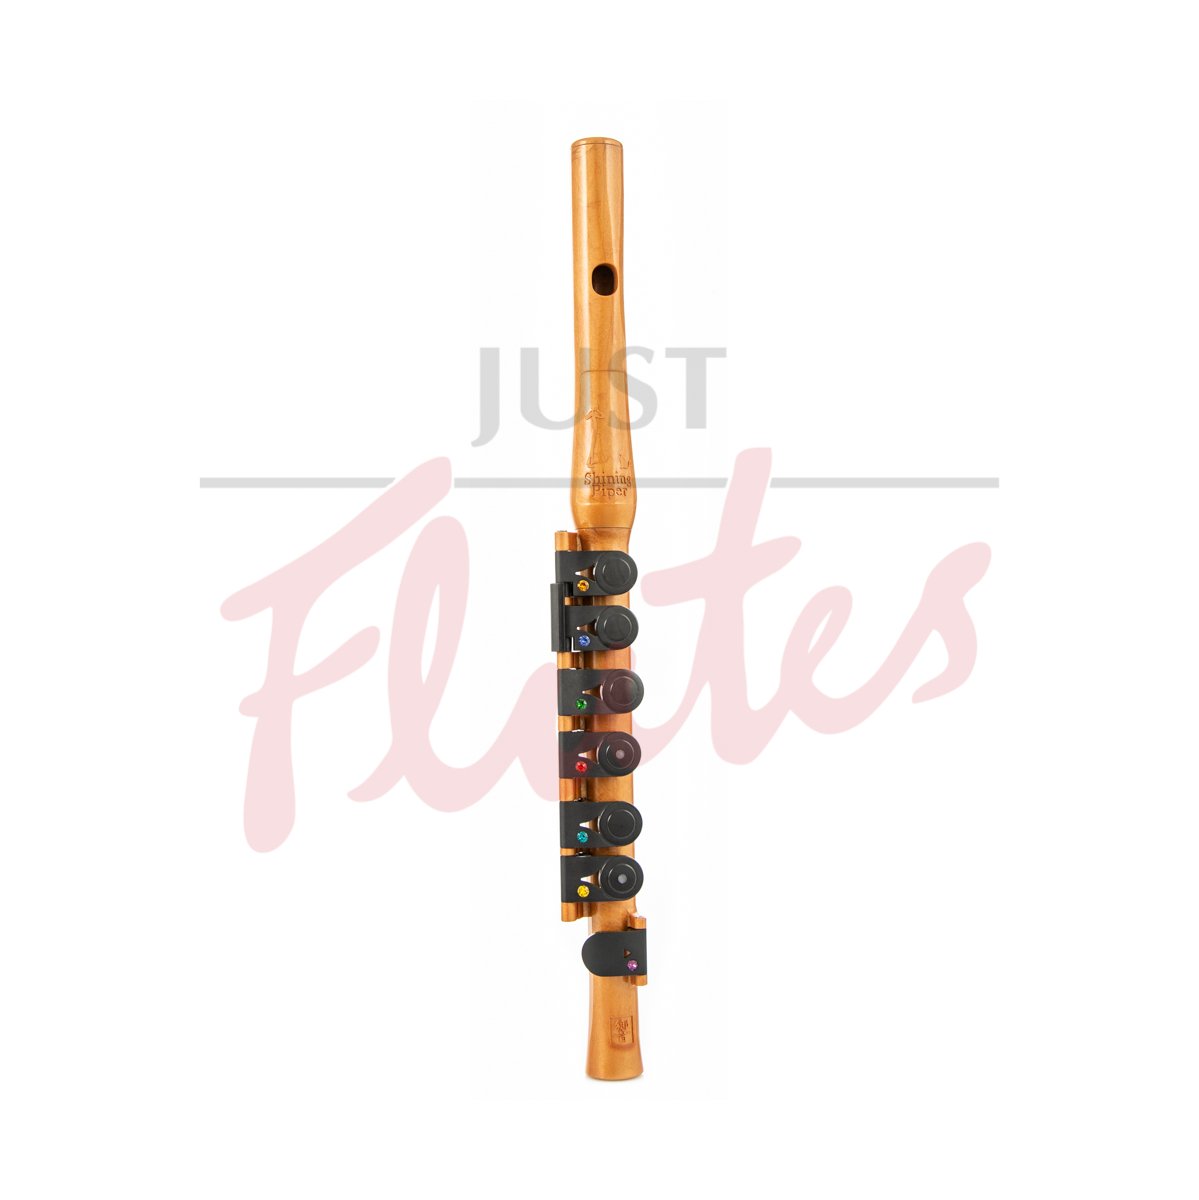 Beginner Fife Flute in C Tangerine GUO Shining Piper 